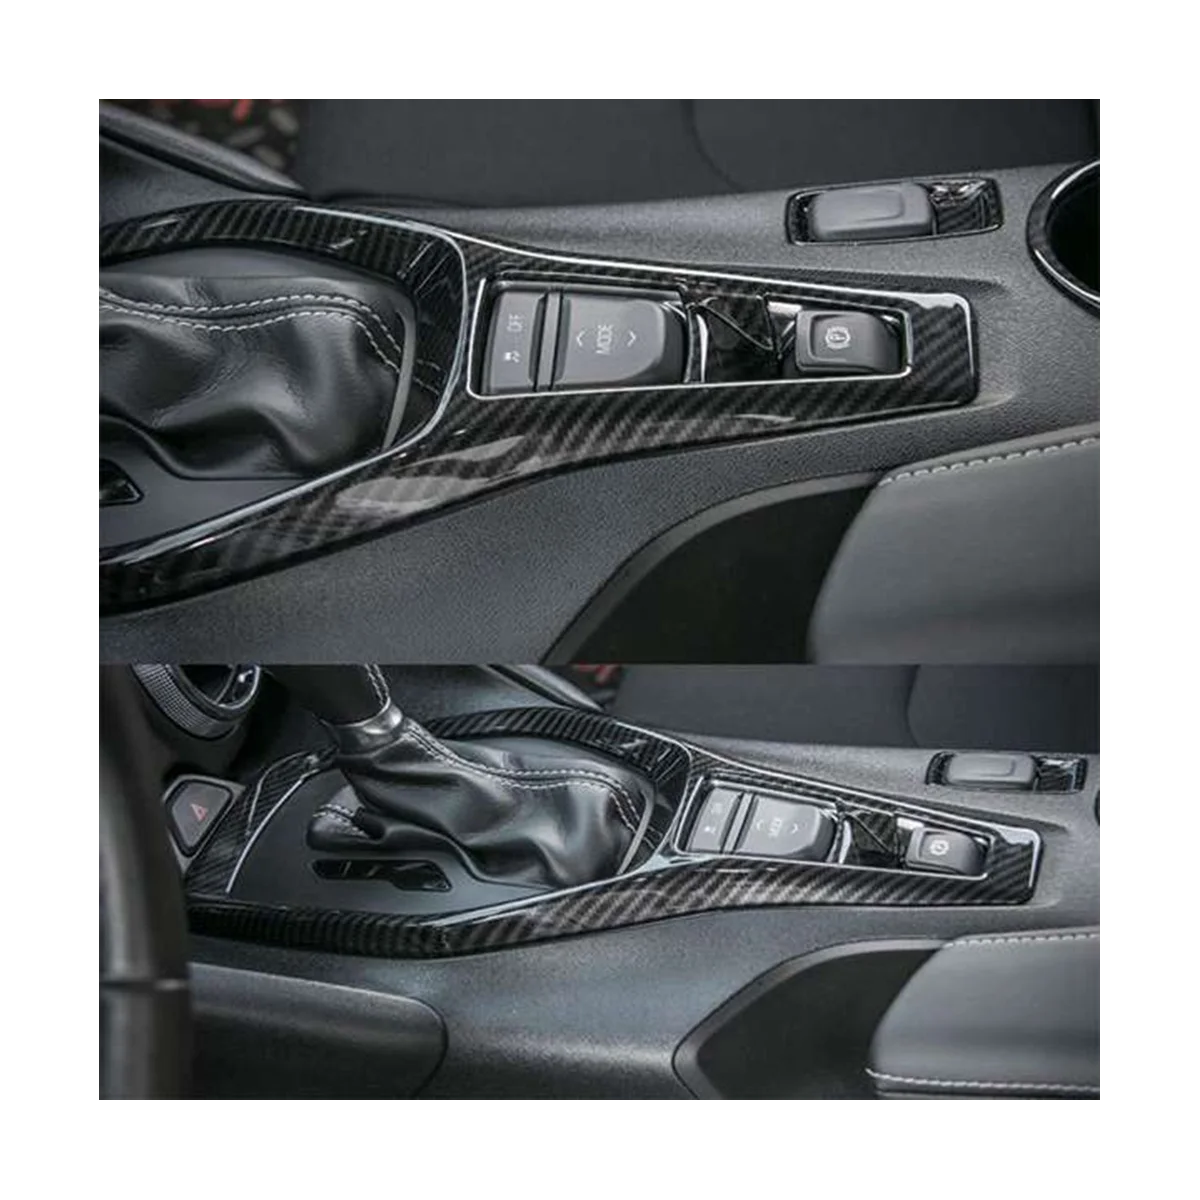 עבור שברולט קמארו 2017 הפנים אביזרי רכב סטיילינג ציוד הבקרה לקצץ לכסות לקצץ מסגרת רצועת מדבקה קיט . ' - ' . 2